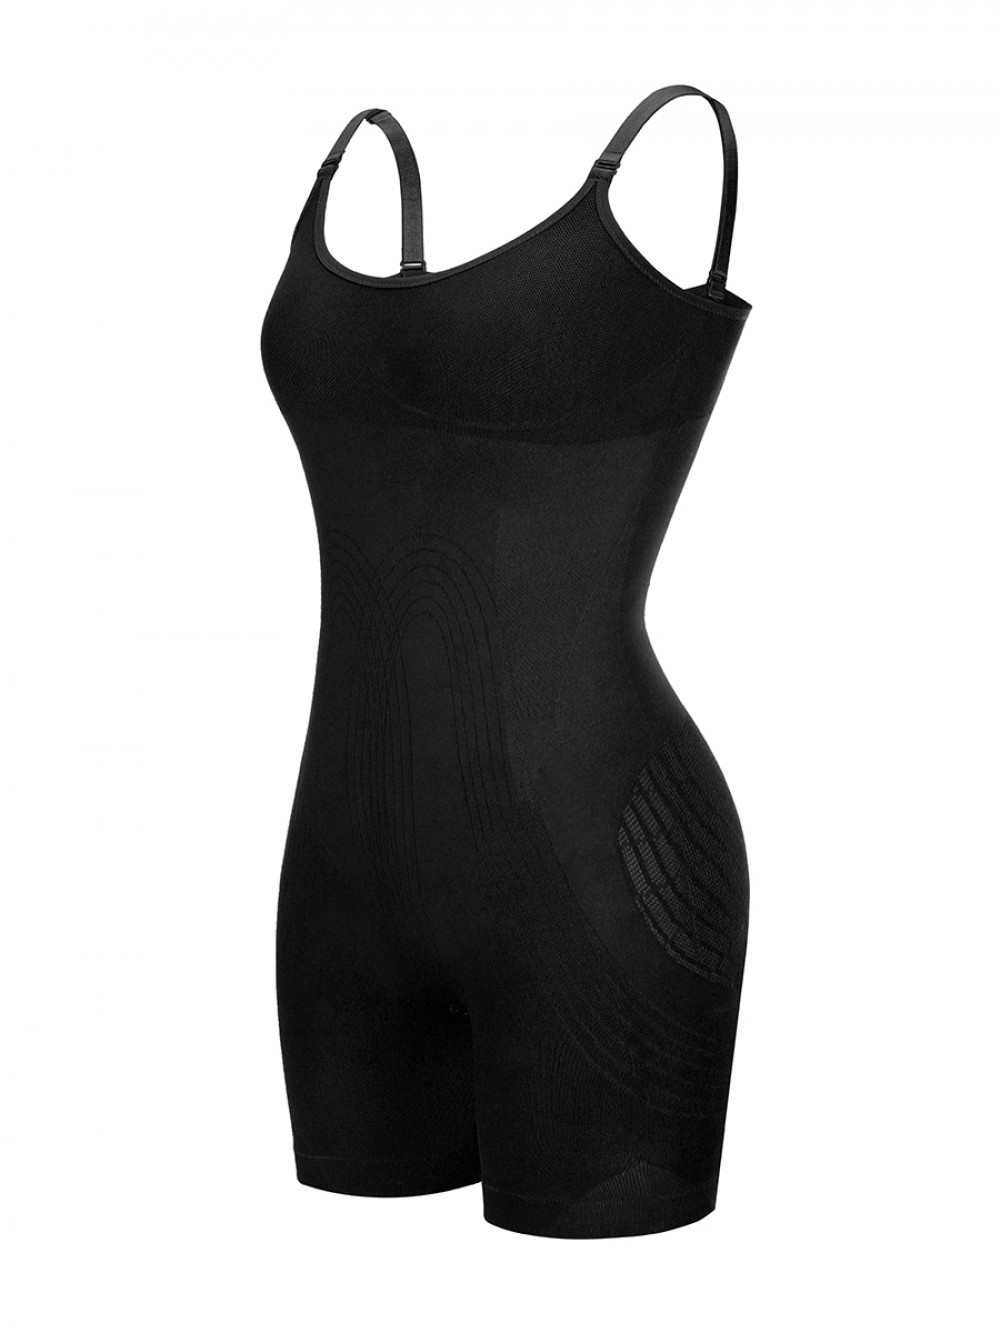 Black Open Gusset Seamless Bodysuit Shapewear Secret Slimming